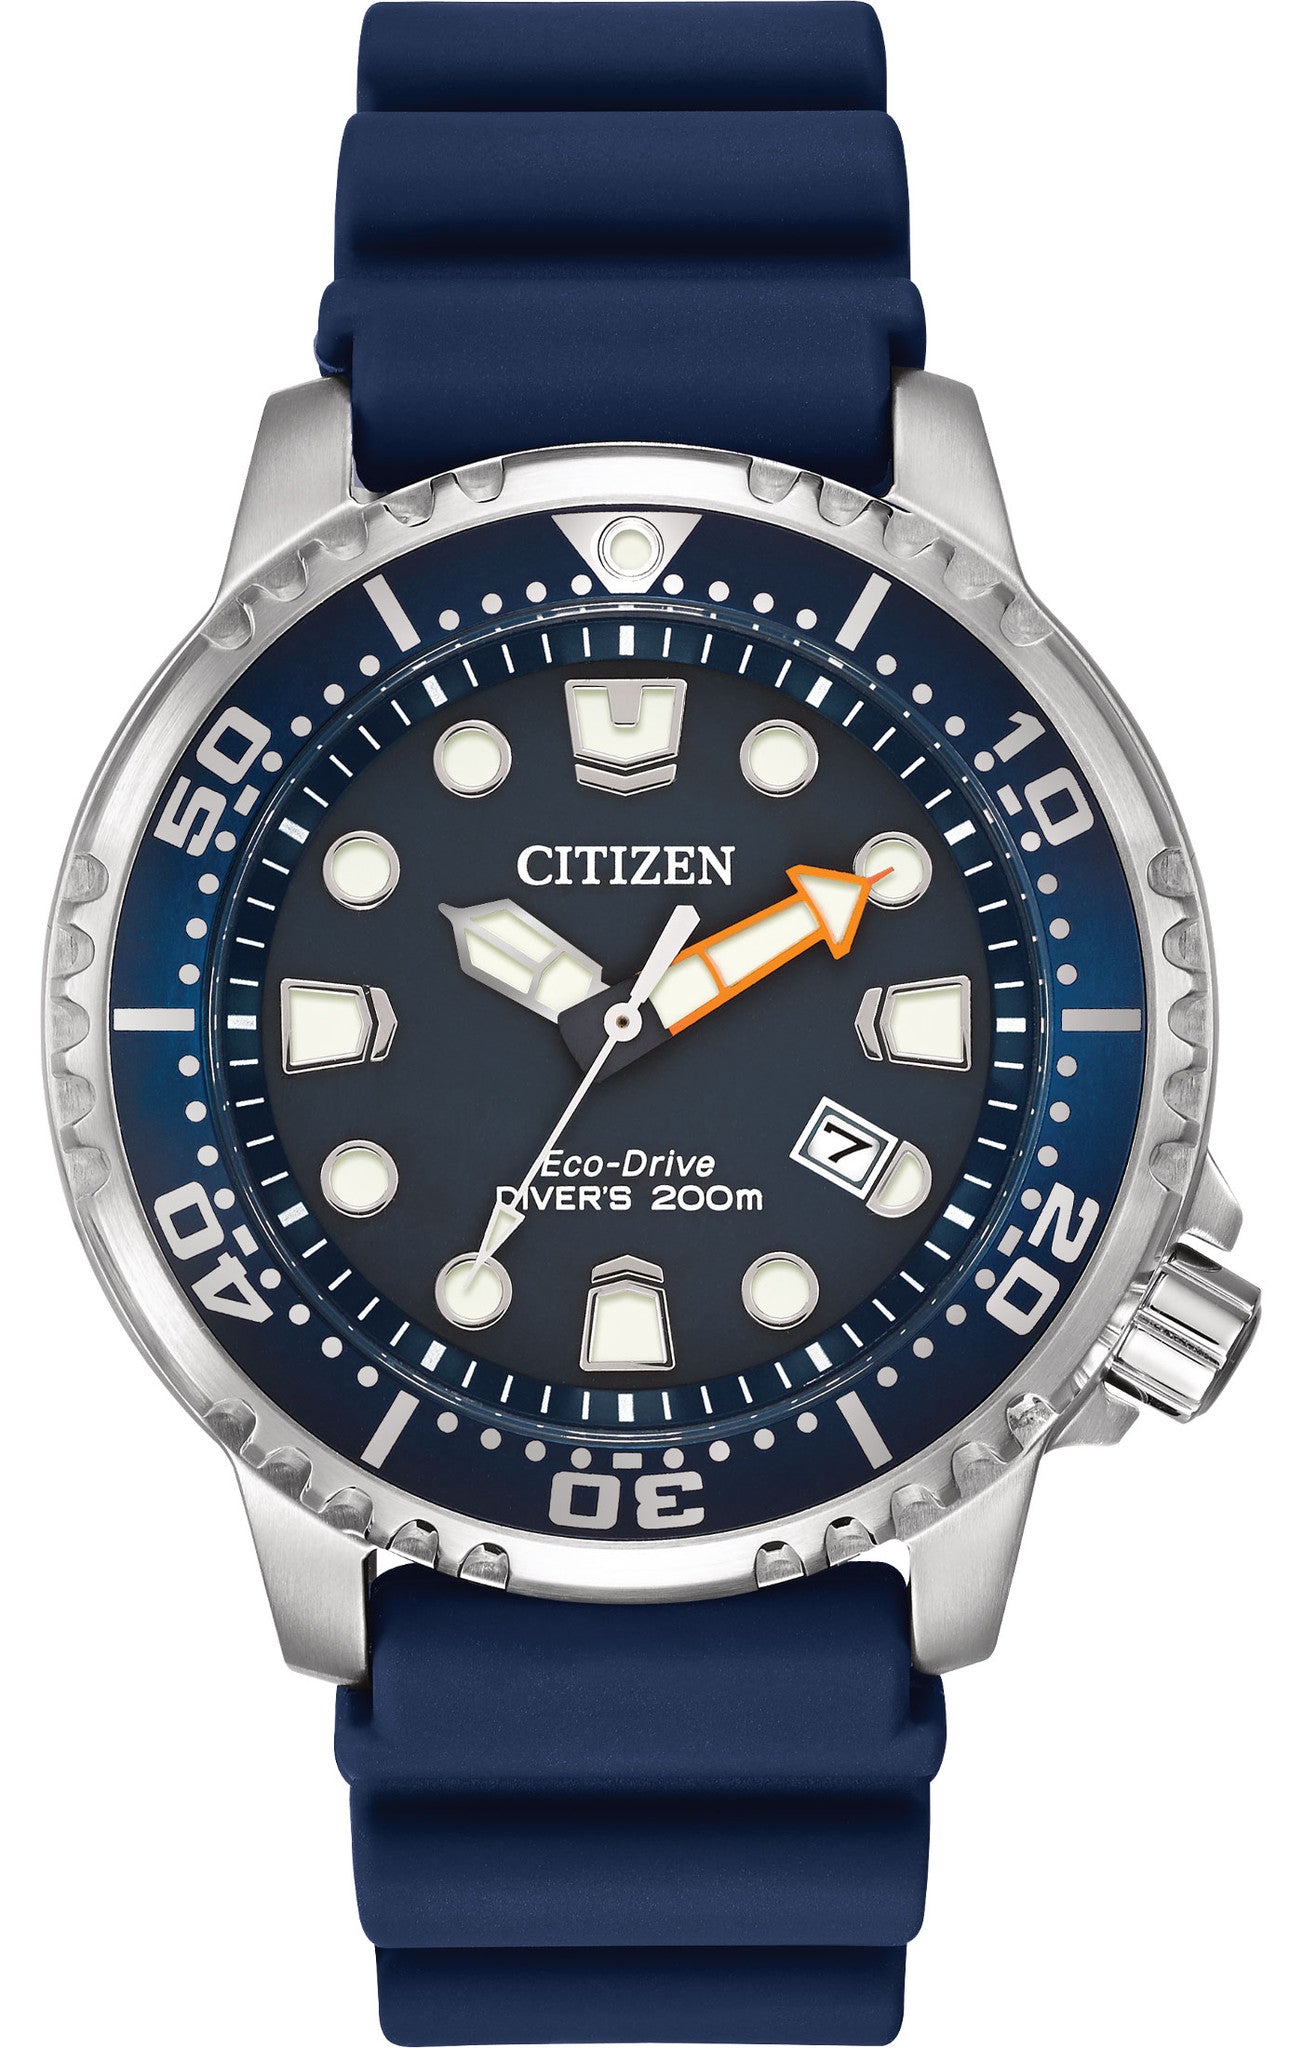 Photos - Wrist Watch Citizen Watch Eco Drive Divers WR200 - Black CZ-450 